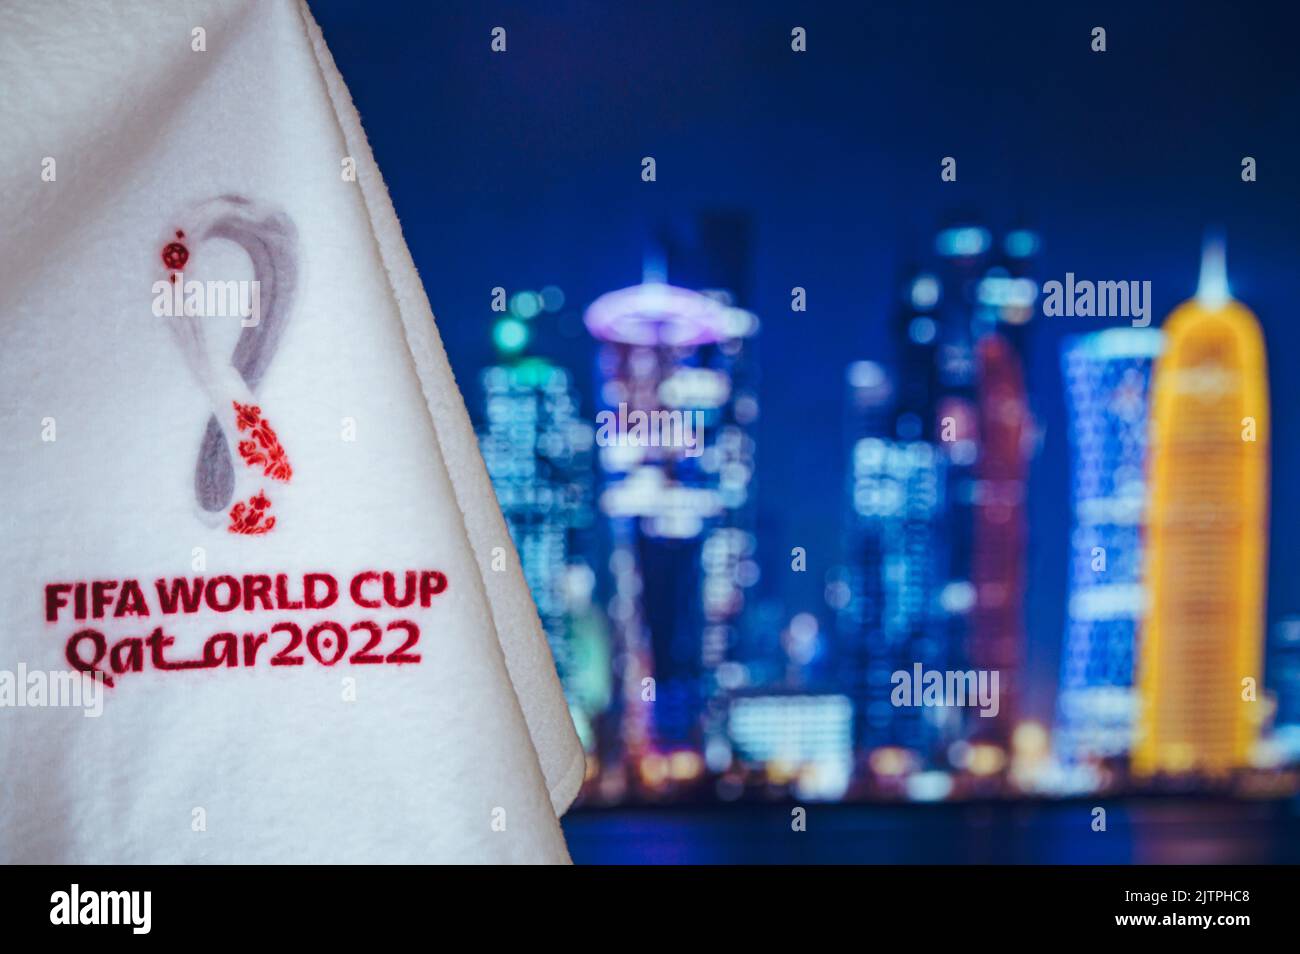 DOHA, KATAR, 30. AUGUST 2022: Logo der FIFA Fußball-Weltmeisterschaft Katar 2022 und nächtliche Skyline von Doha im Hintergrund. Fußball WM Katar 2022 Tapete und bla Stockfoto